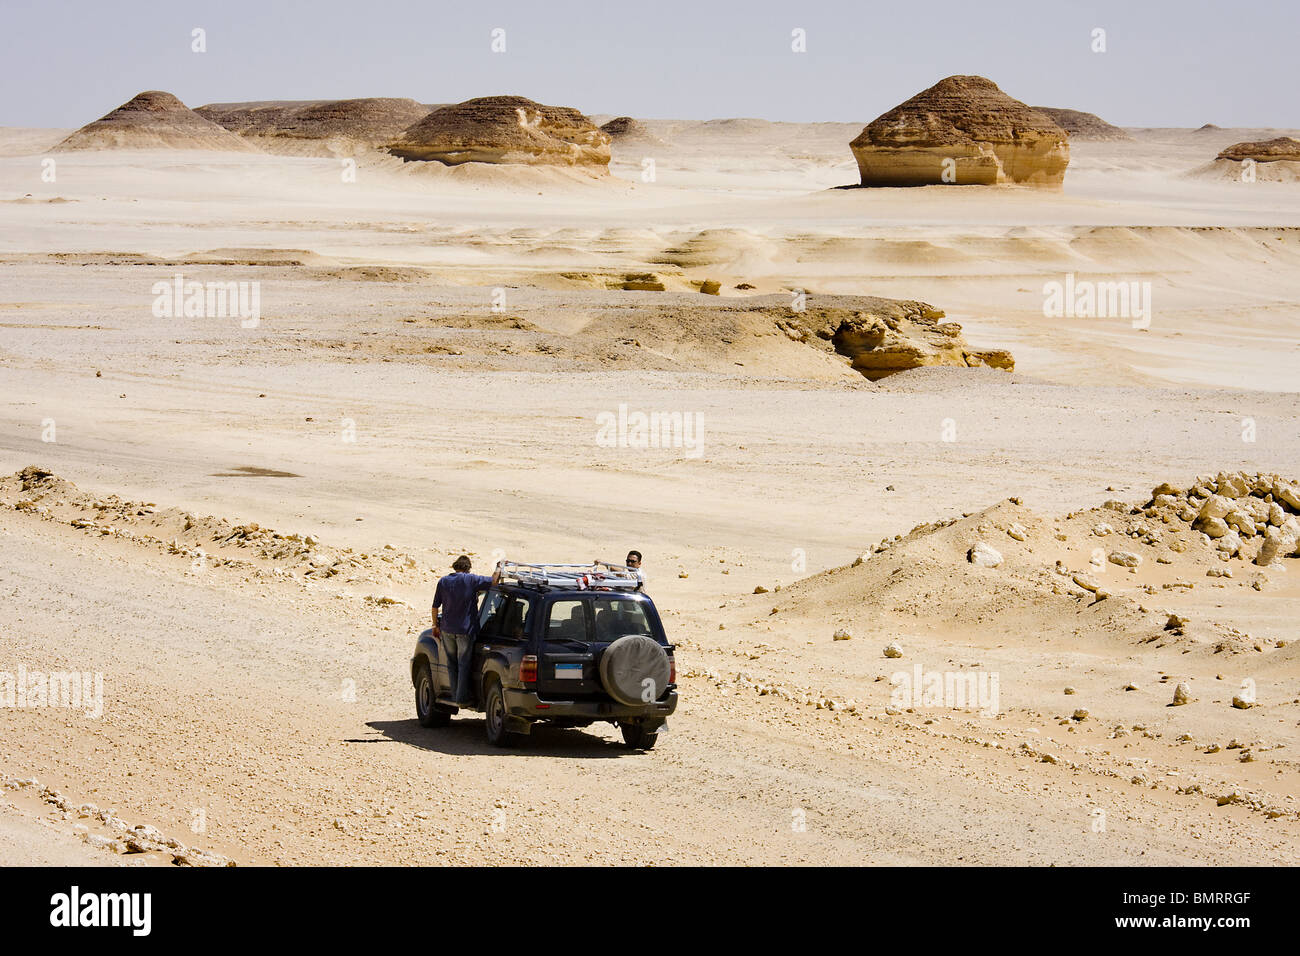 4x4 in White desert. Egypt Stock Photo